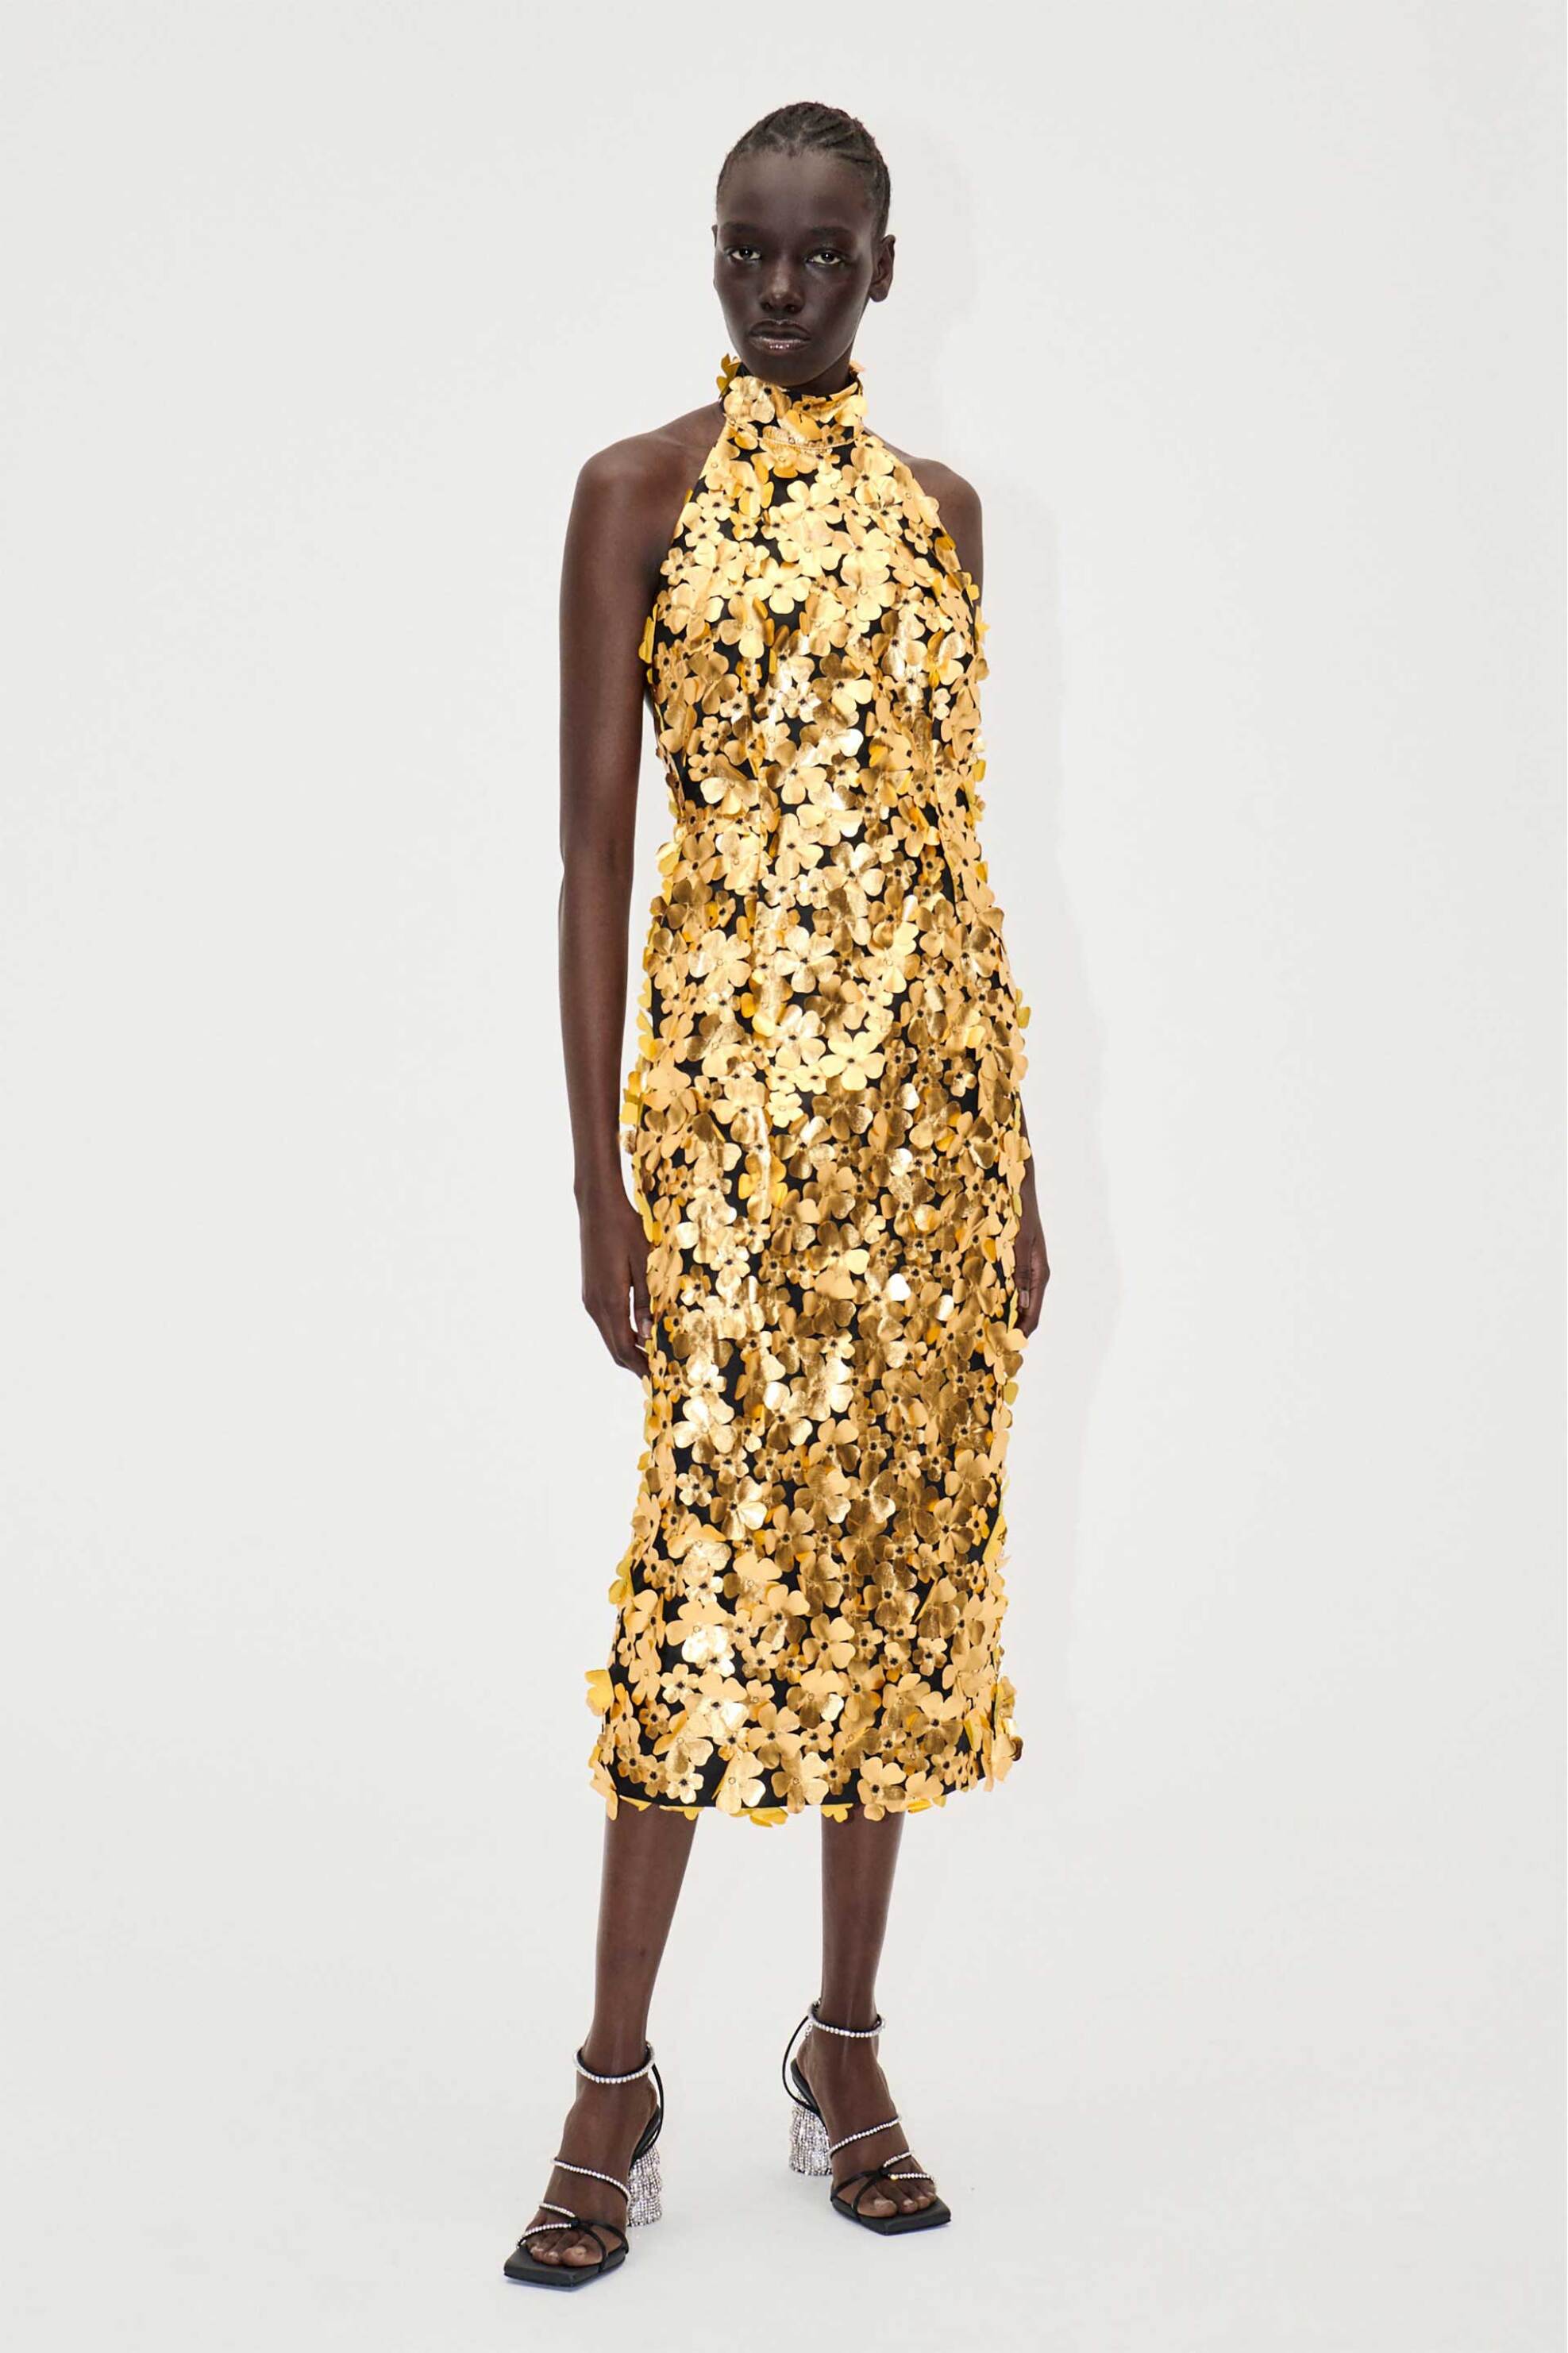 Γυναικεία Ρούχα & Αξεσουάρ > Γυναικεία Ρούχα > Γυναικεία Φορέματα > Γυναικεία Φορέματα Midi Stine Goya γυναικείο midi φόρεμα με 3D διακοσμητικά λουλούδια "Mollie" - SG5499 Χρυσό